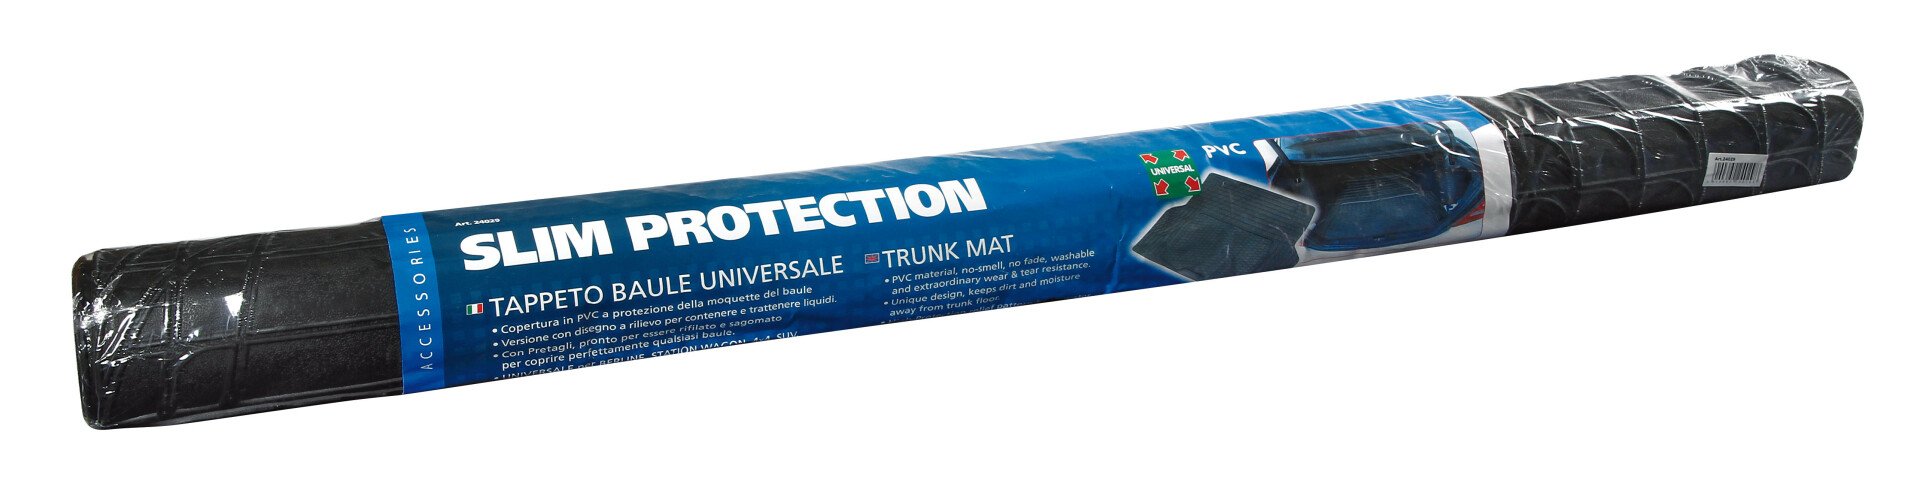 PVC Slim Protection - csomagtartó tálca - 140x108cm thumb